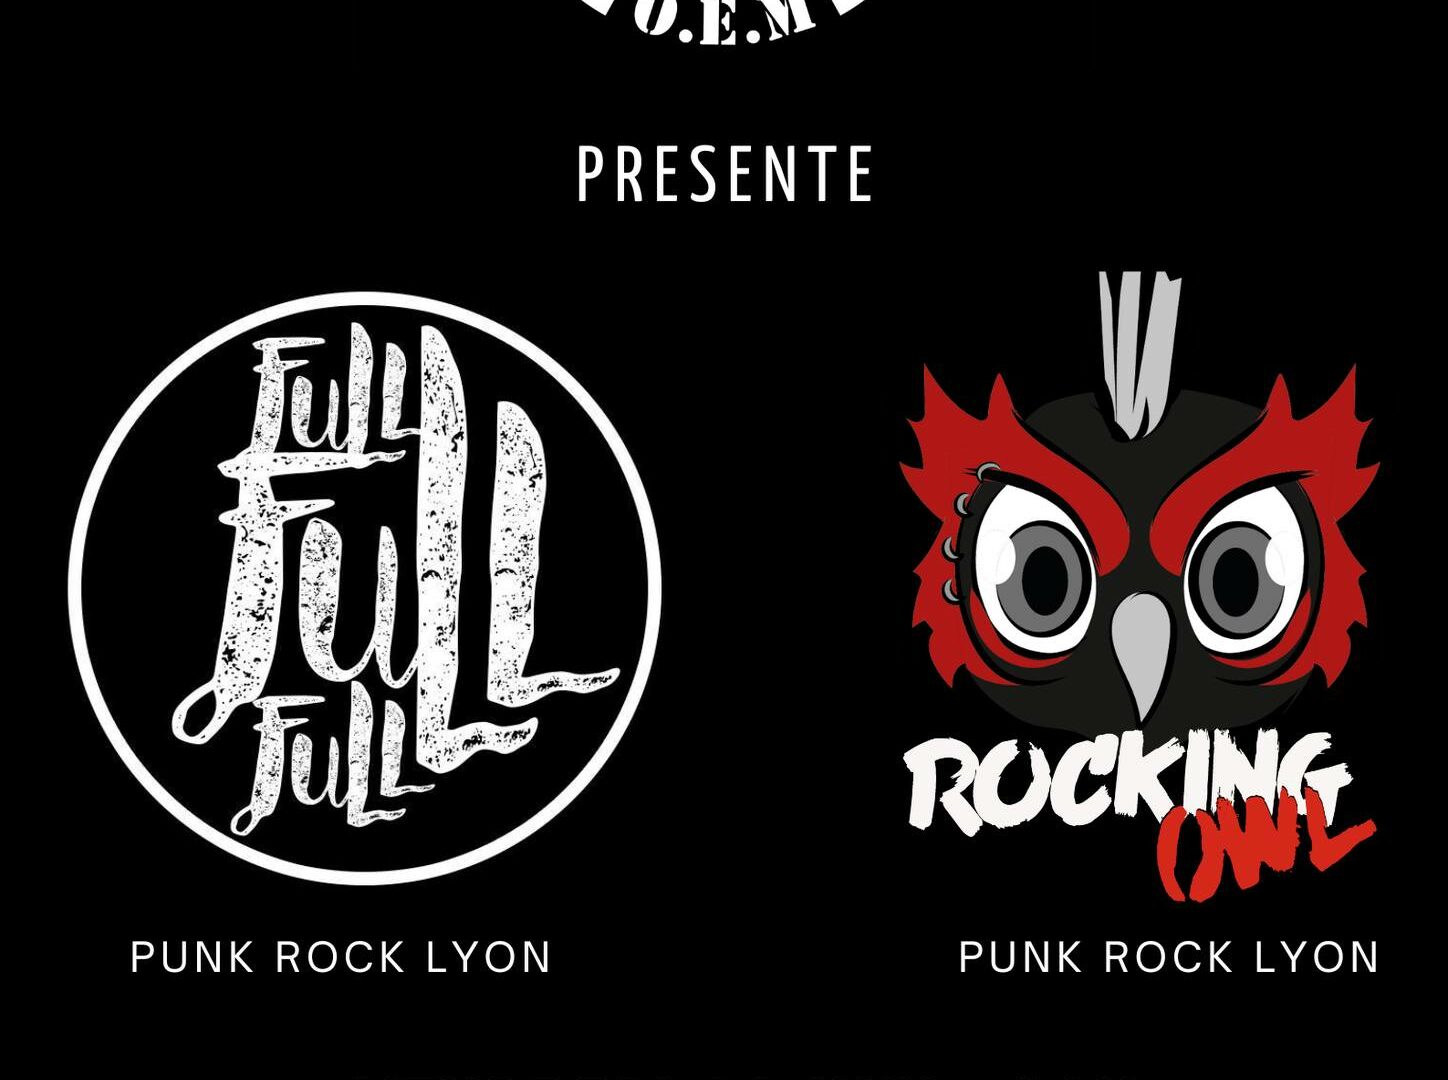 Concert Full Full Full + Rocking Owl